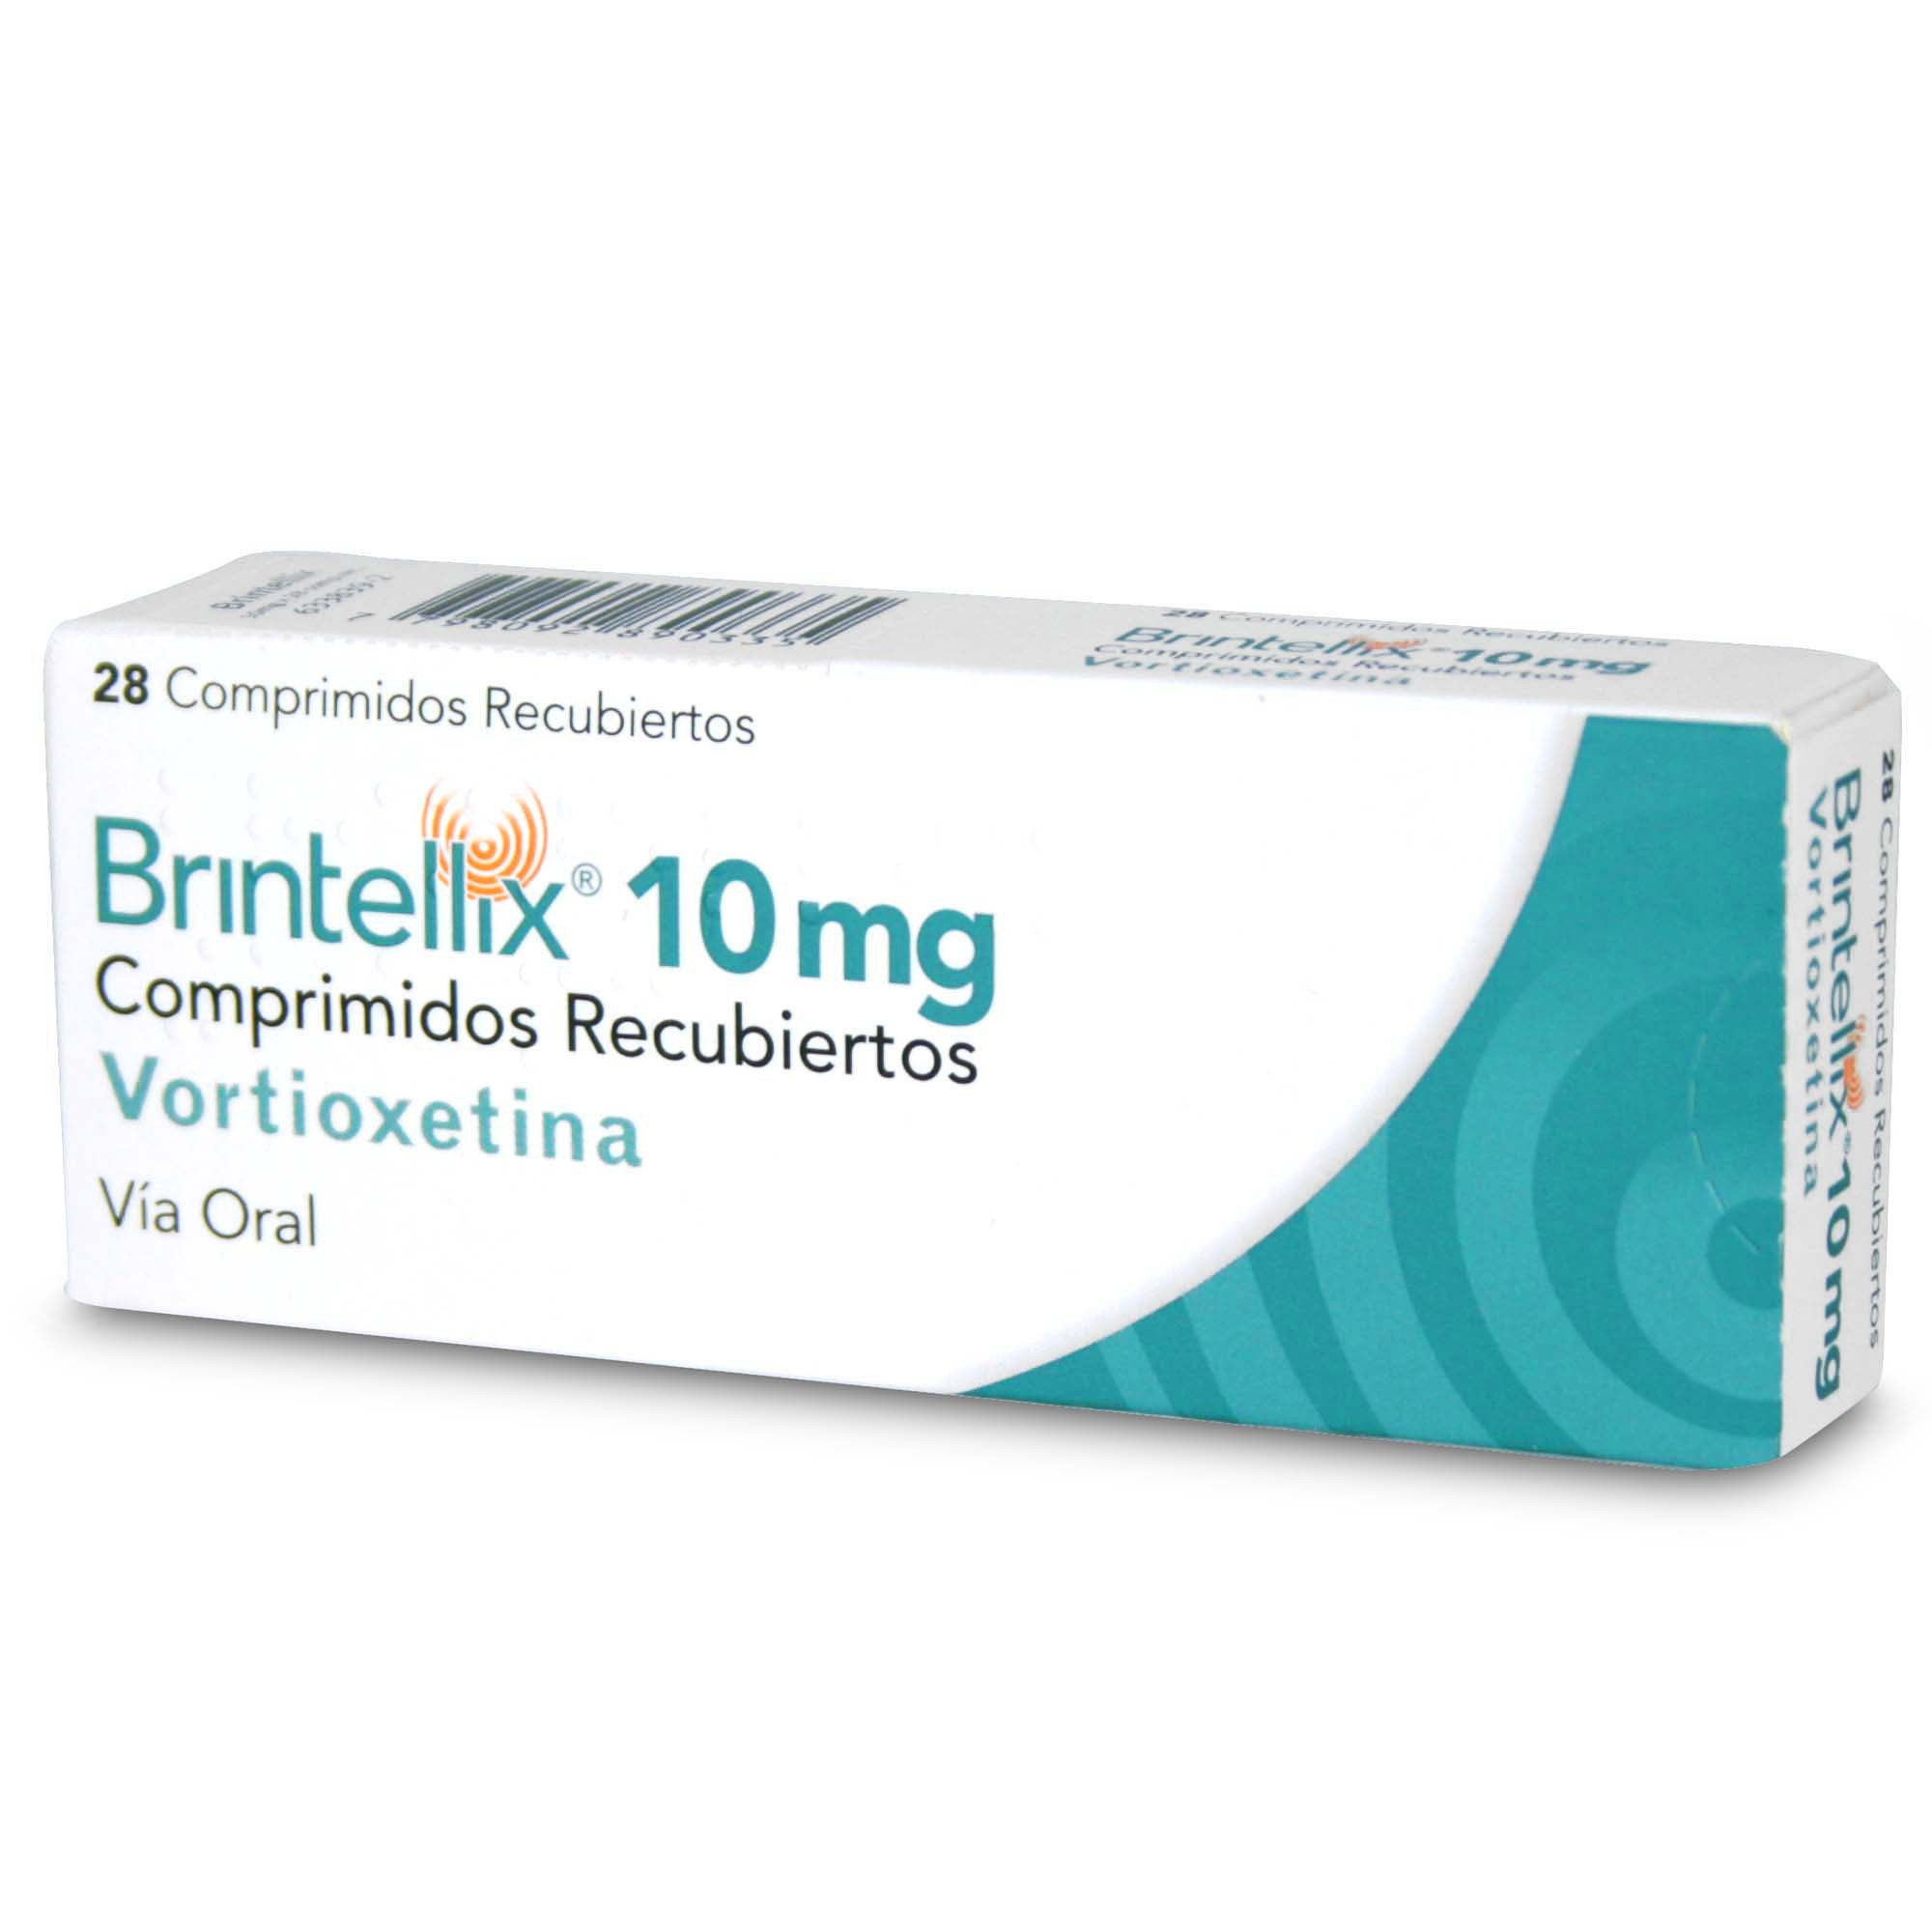 Brintellix Vortioxetina 10 Mg 28 Comprimidos Recubierto Farmacias Cruz Verde 5771